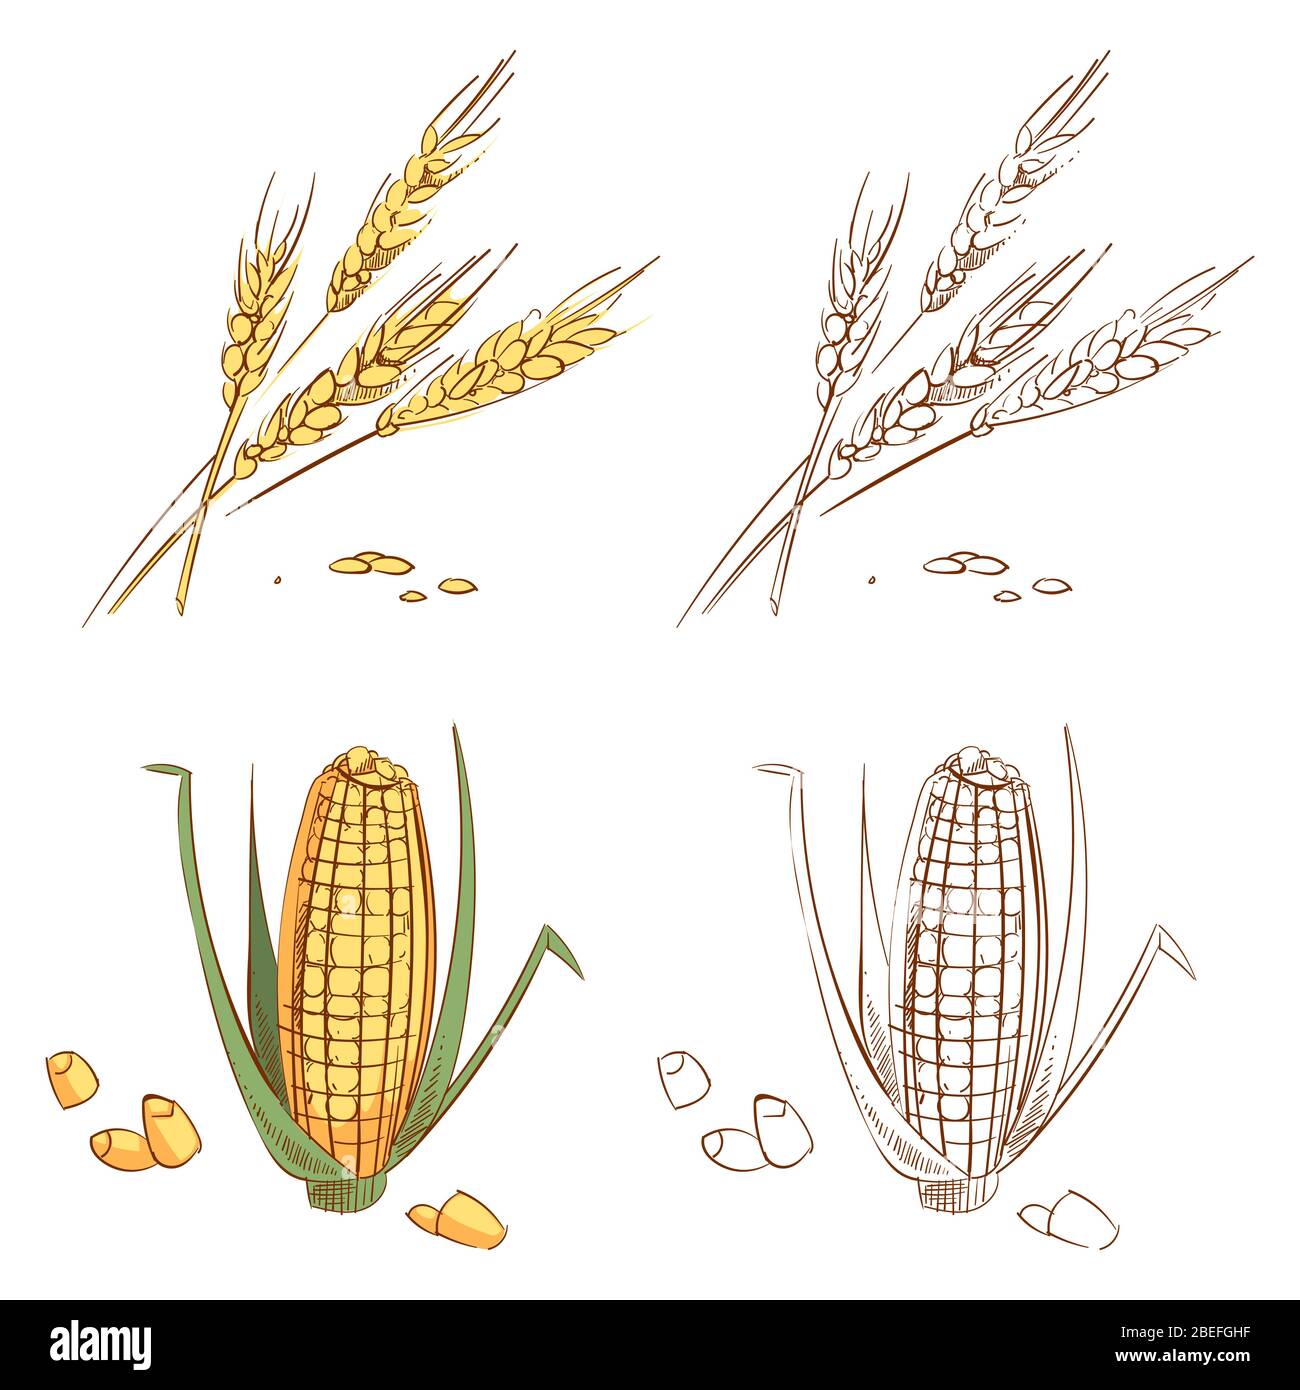 Oreilles de blé et de maïs tracées à la main isolées sur fond blanc. Agriculture biologique pour l'alimentation en maïs, récolte naturelle de plantes. Illustration vectorielle Illustration de Vecteur